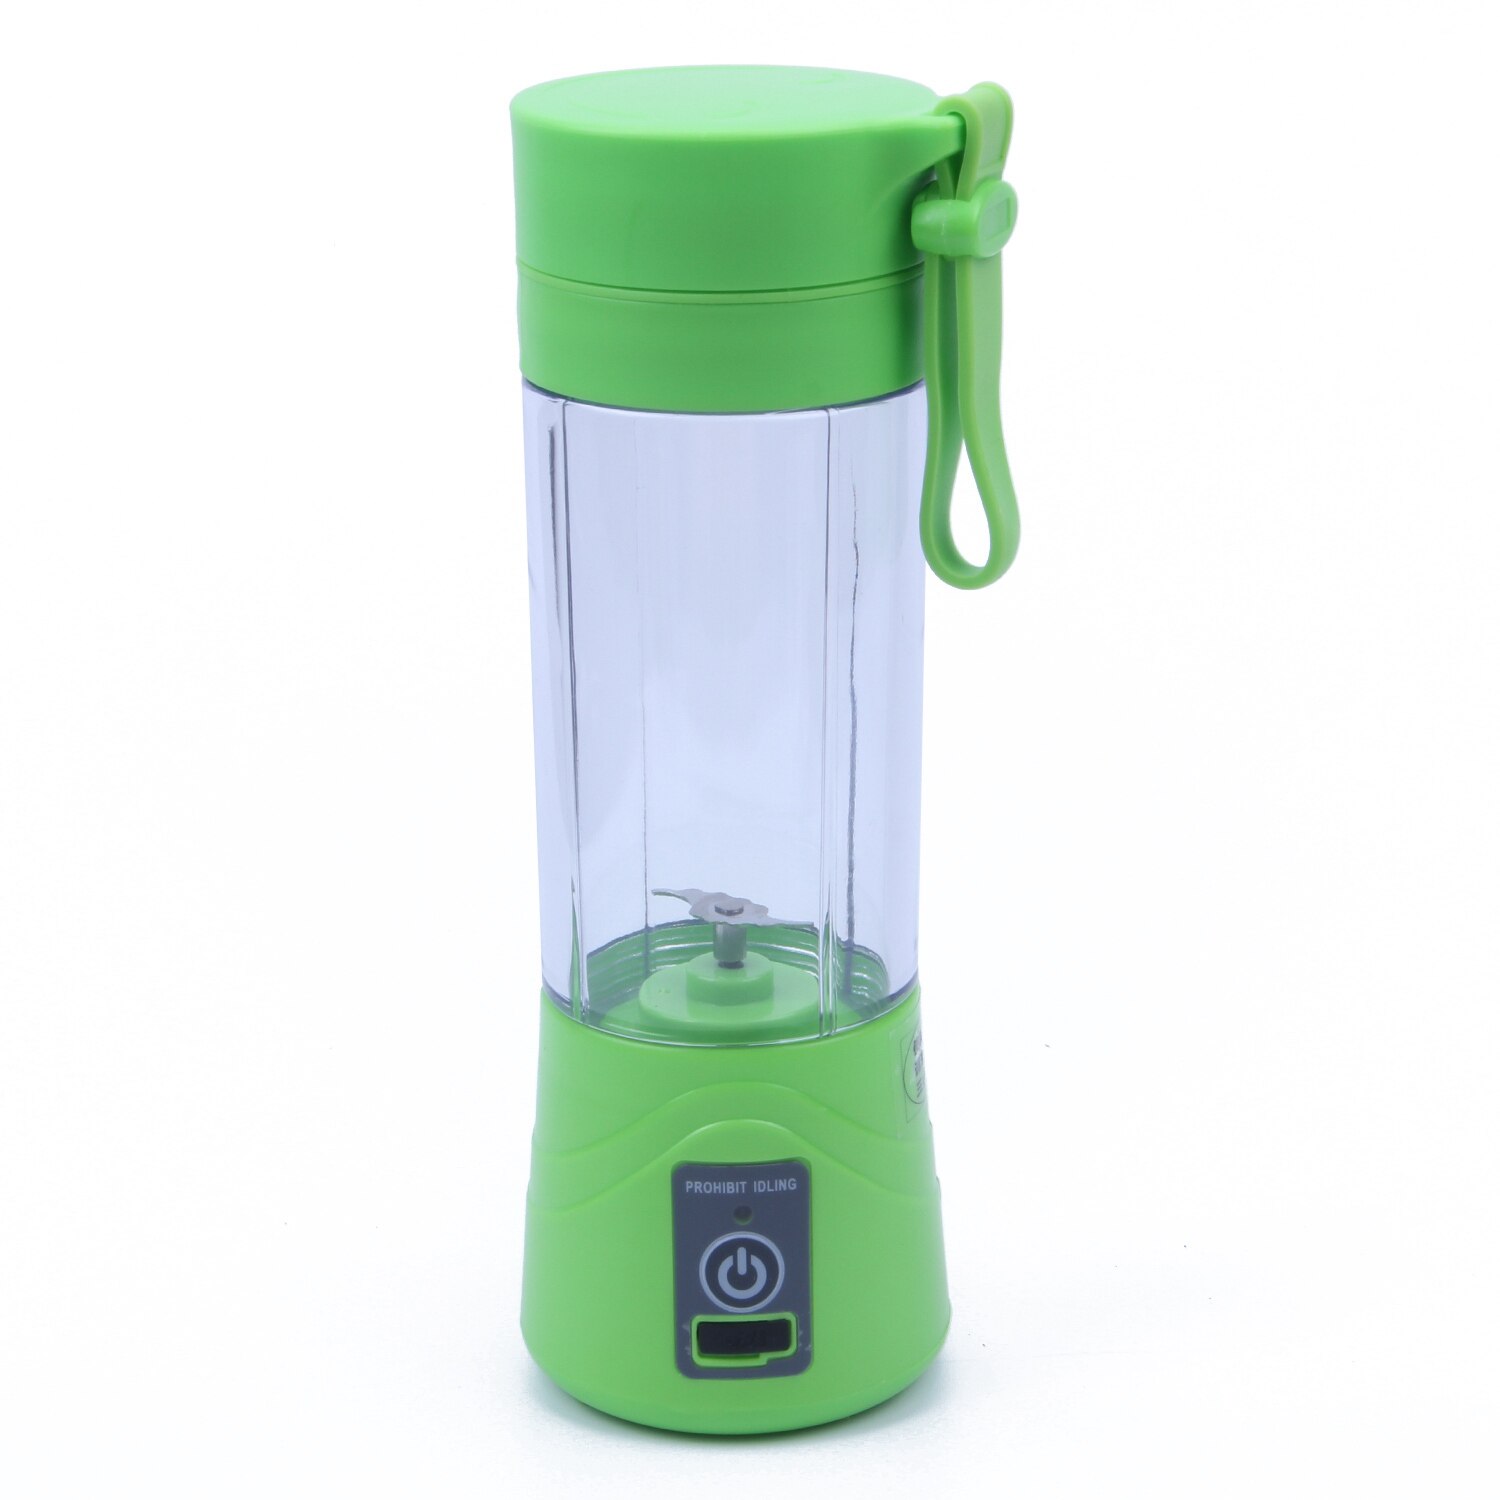 380ml Portable Blender ,Orange Juicer Vegetables Fruit Milkshake Smoothie Blender, Electric Kitchen Mixer (USB Rechargeable): Green